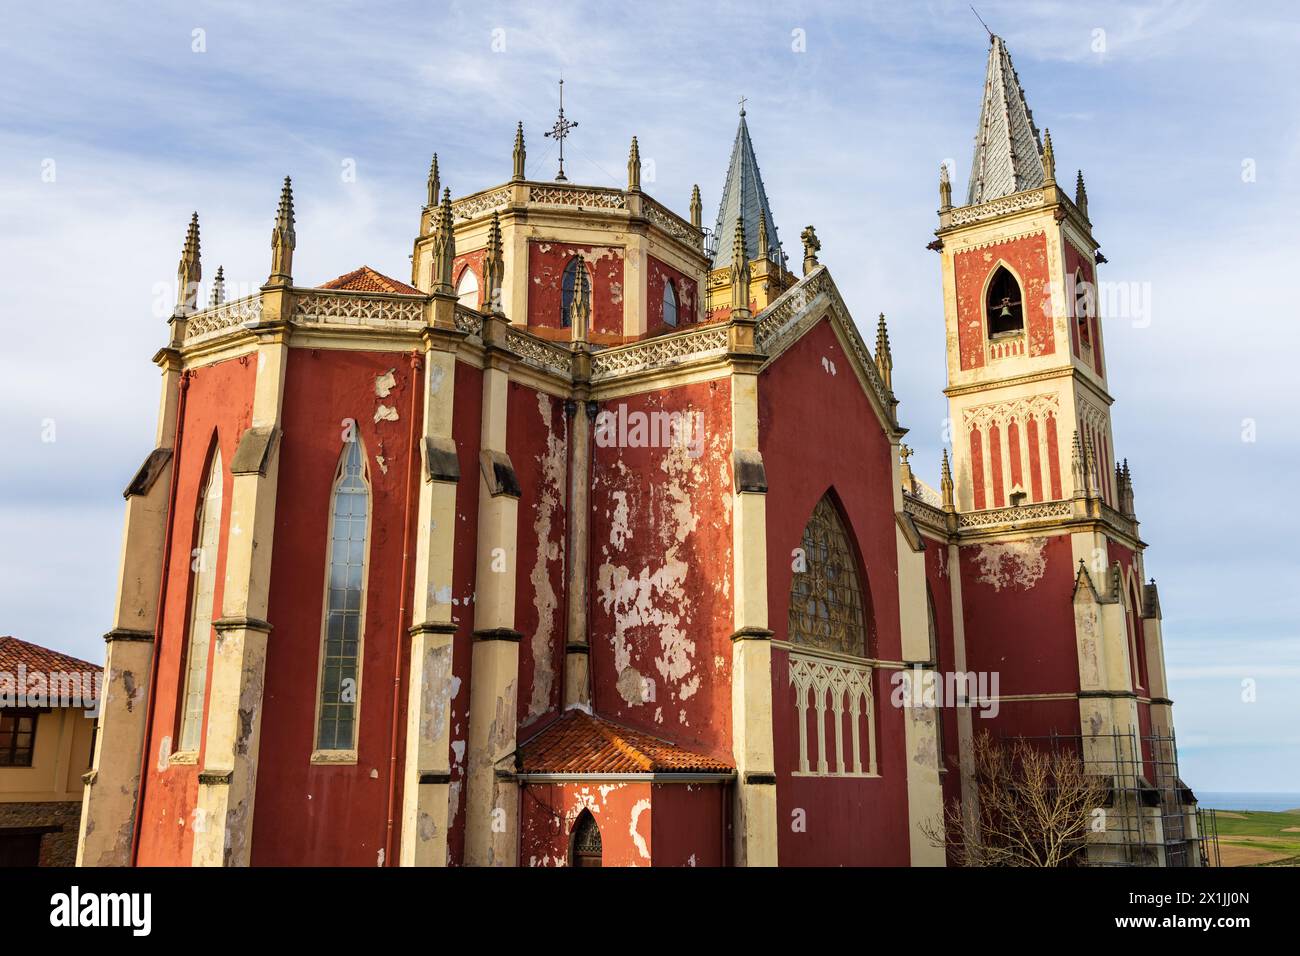 L'église paroissiale rouge vif de San Pedro ad Venceya, avec deux tours, dans le néo-gothique français et l'Indiano. Cóbreces, Cantabrie, Espagne. Banque D'Images